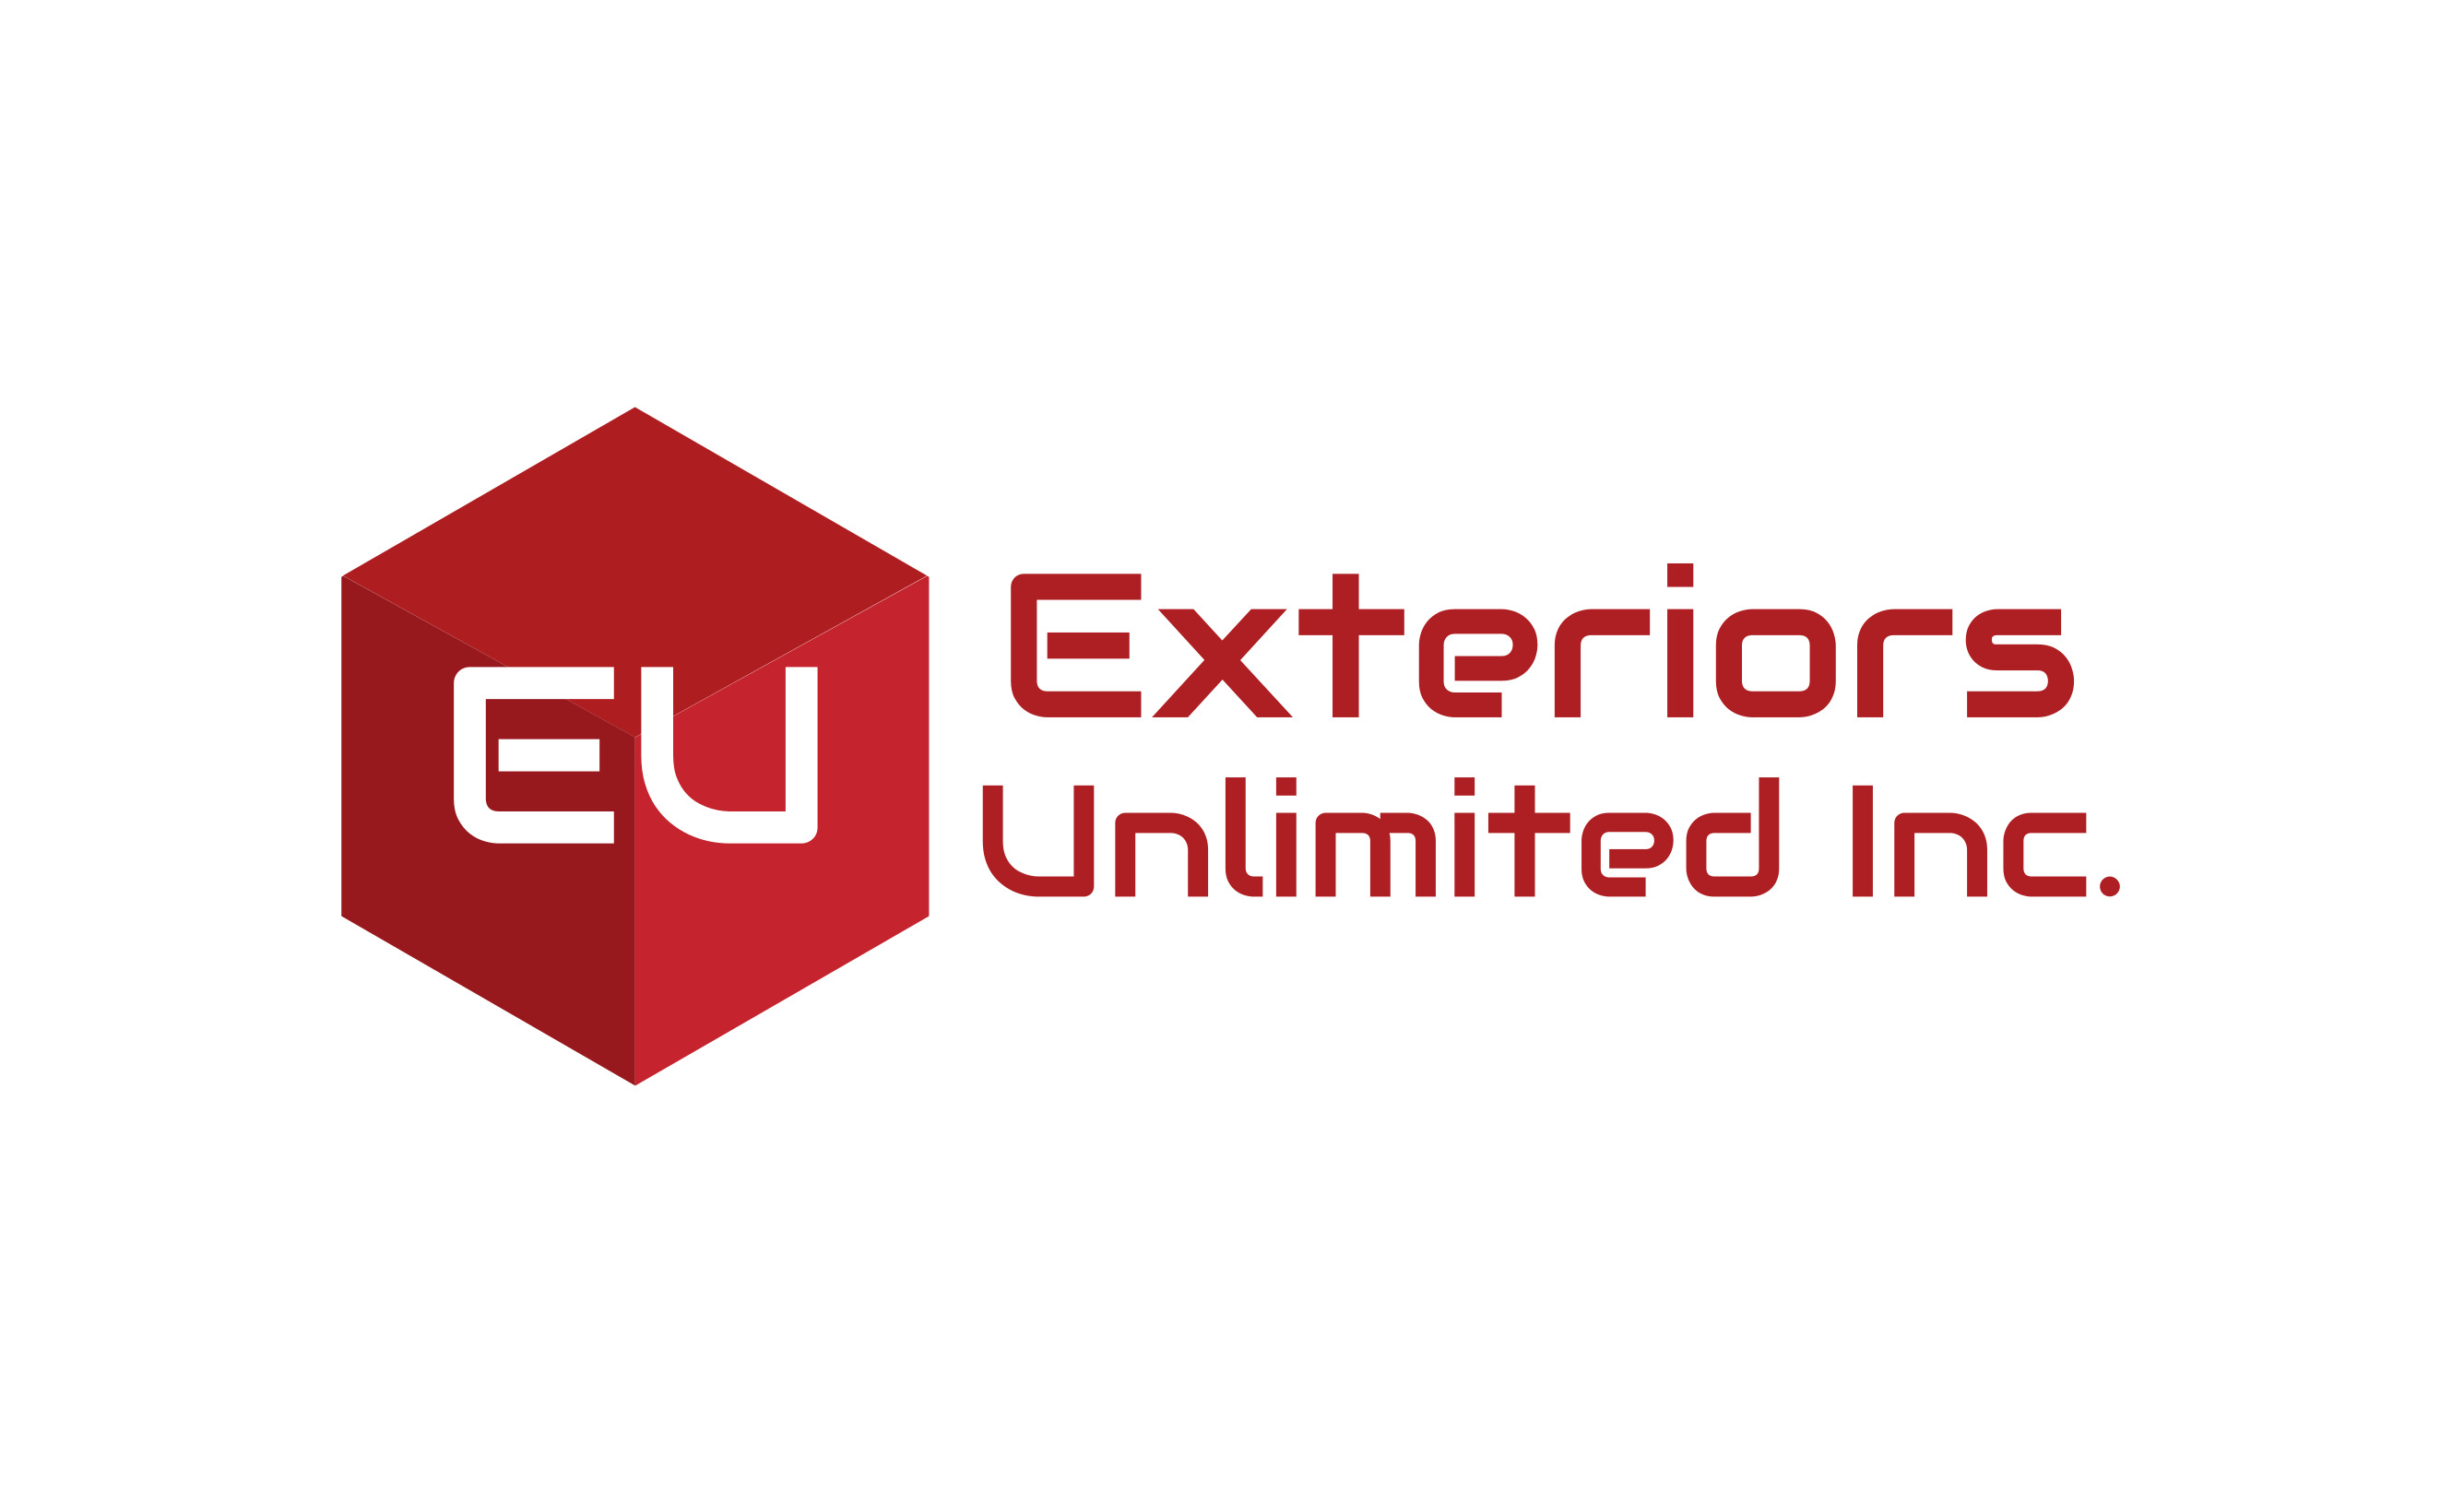 Exteriors Unlimited, Inc. Logo